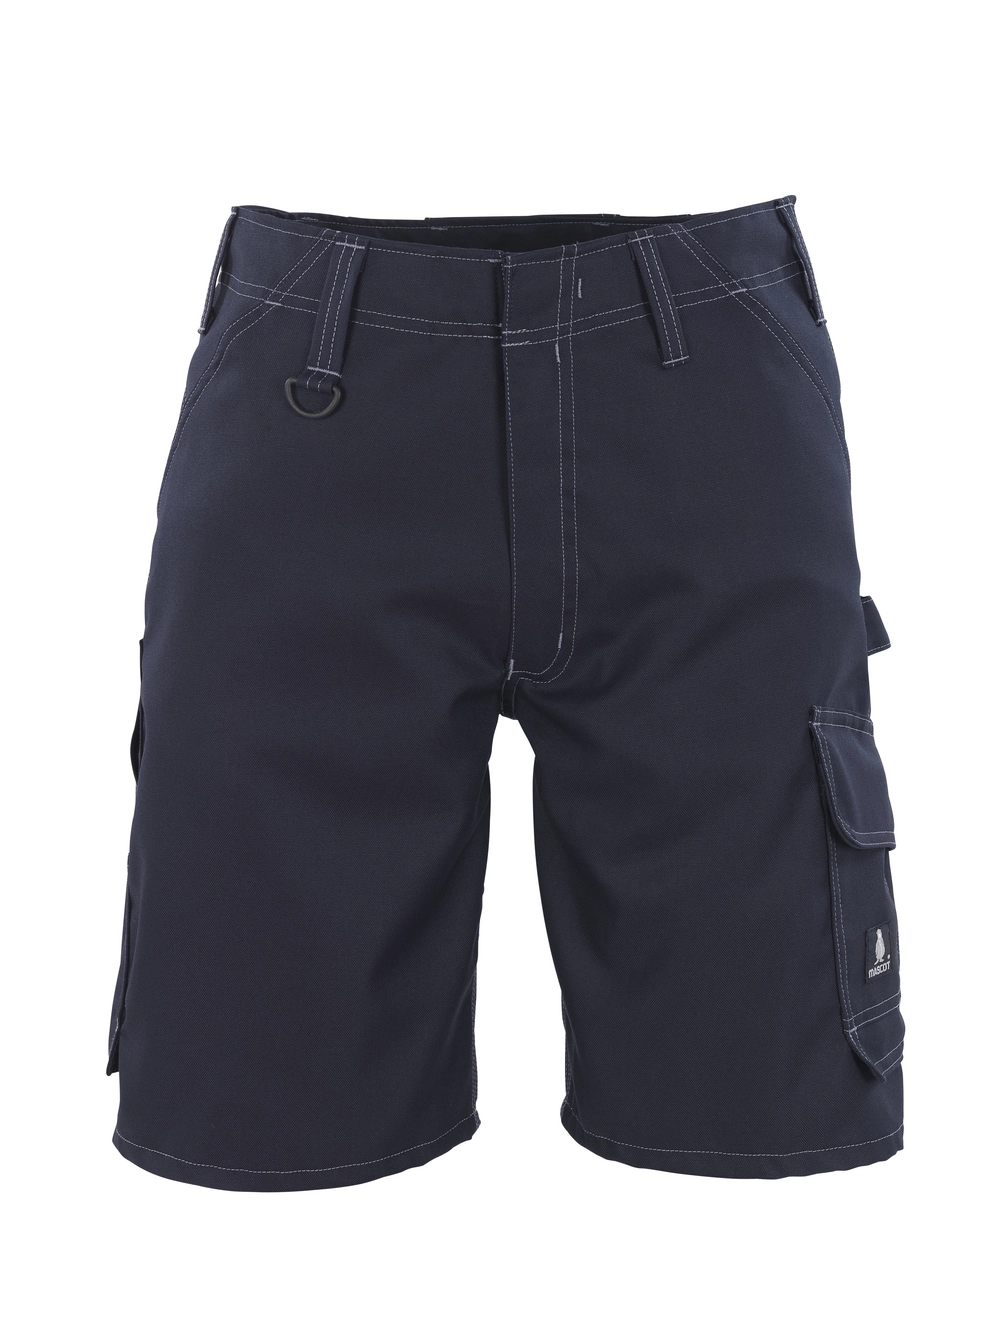 MASCOT® Charleston Shorts Größe C43, schwarzblau